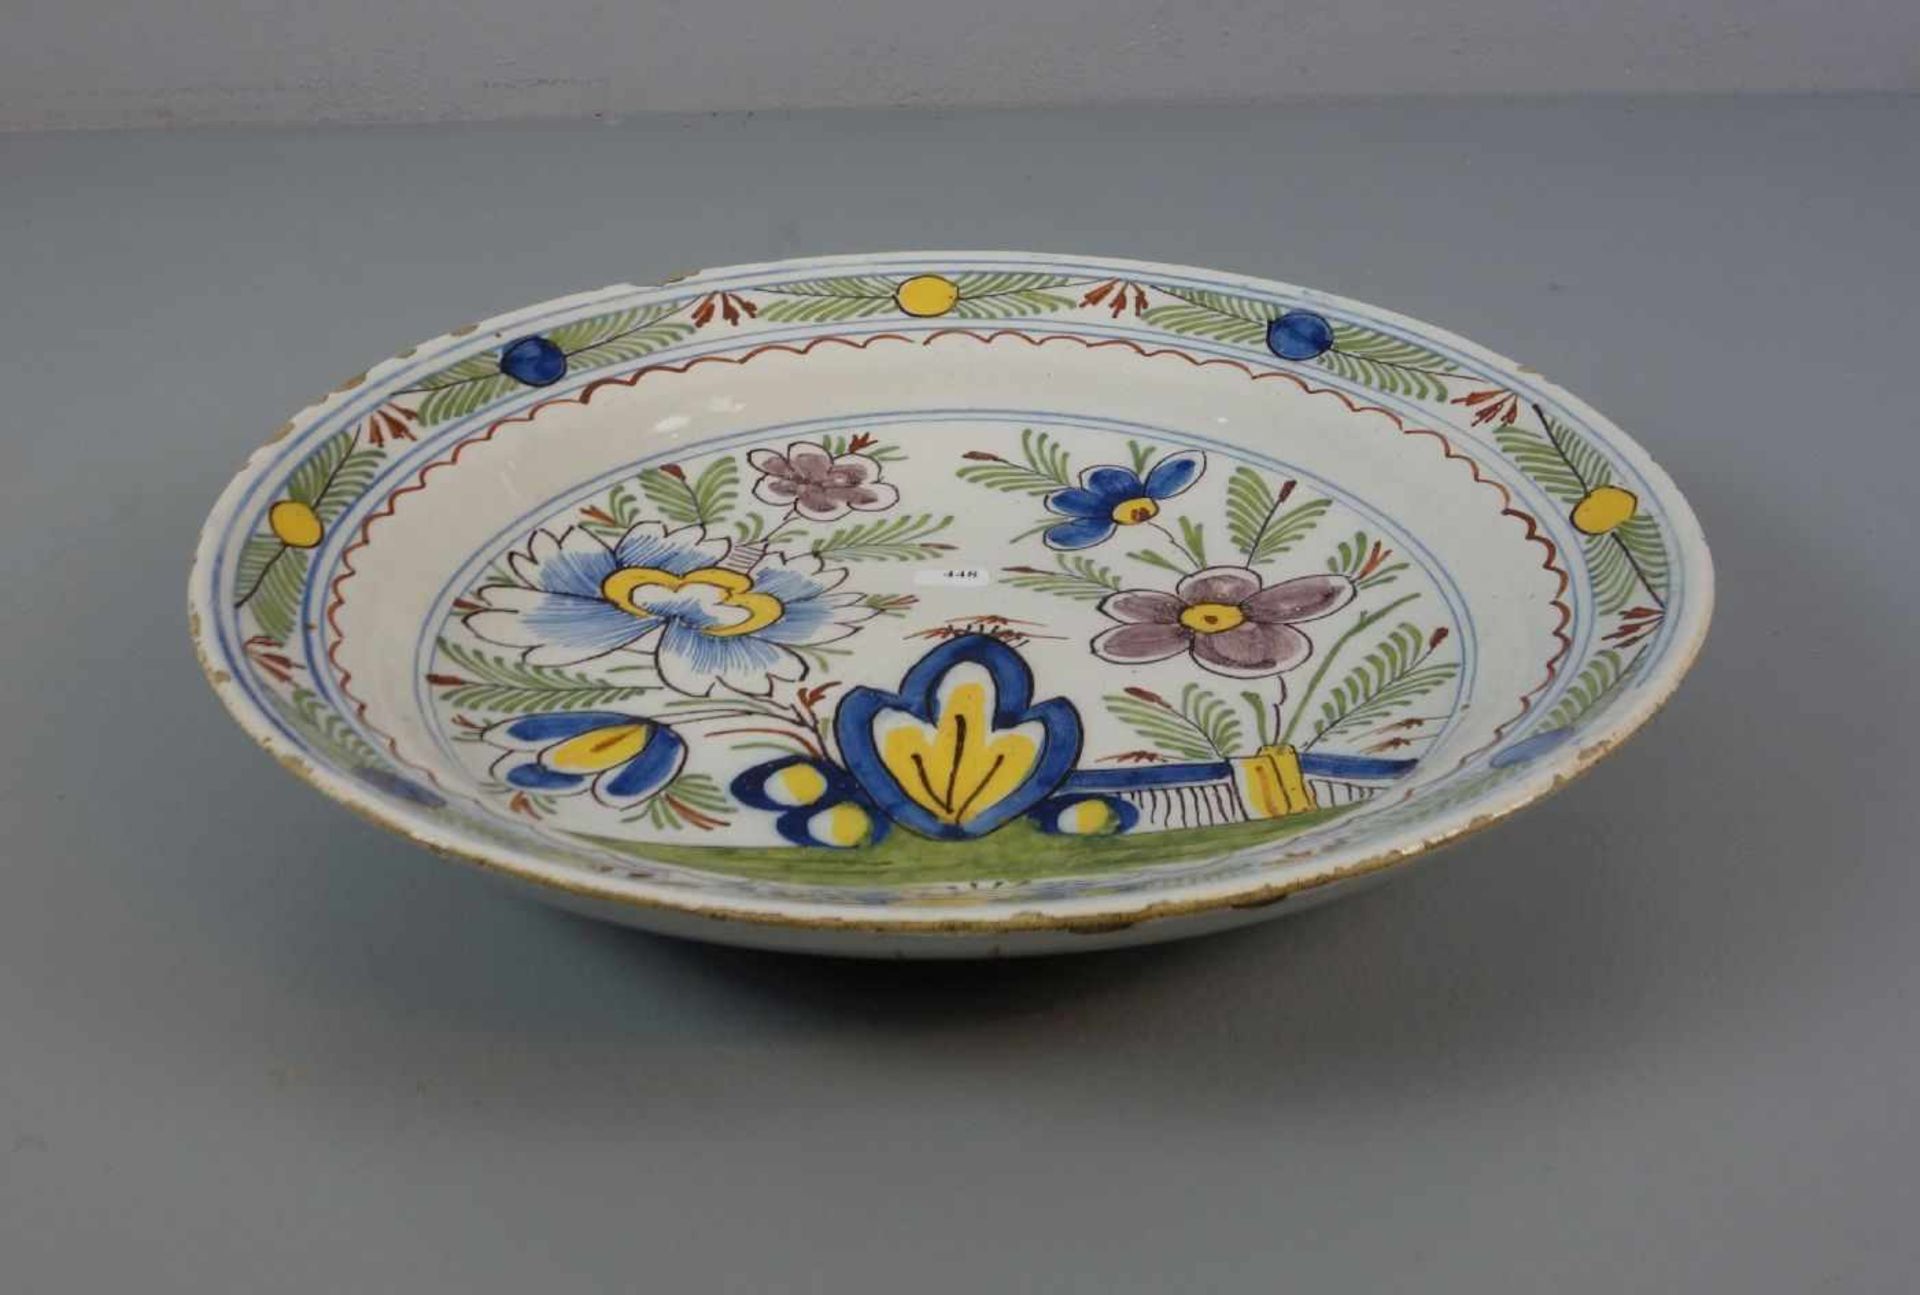 TELLER / SCHALE, Keramik, heller Scherben, Niederlande, 19. Jh., ungemarkt. Graublaue Glasur, - Image 2 of 3